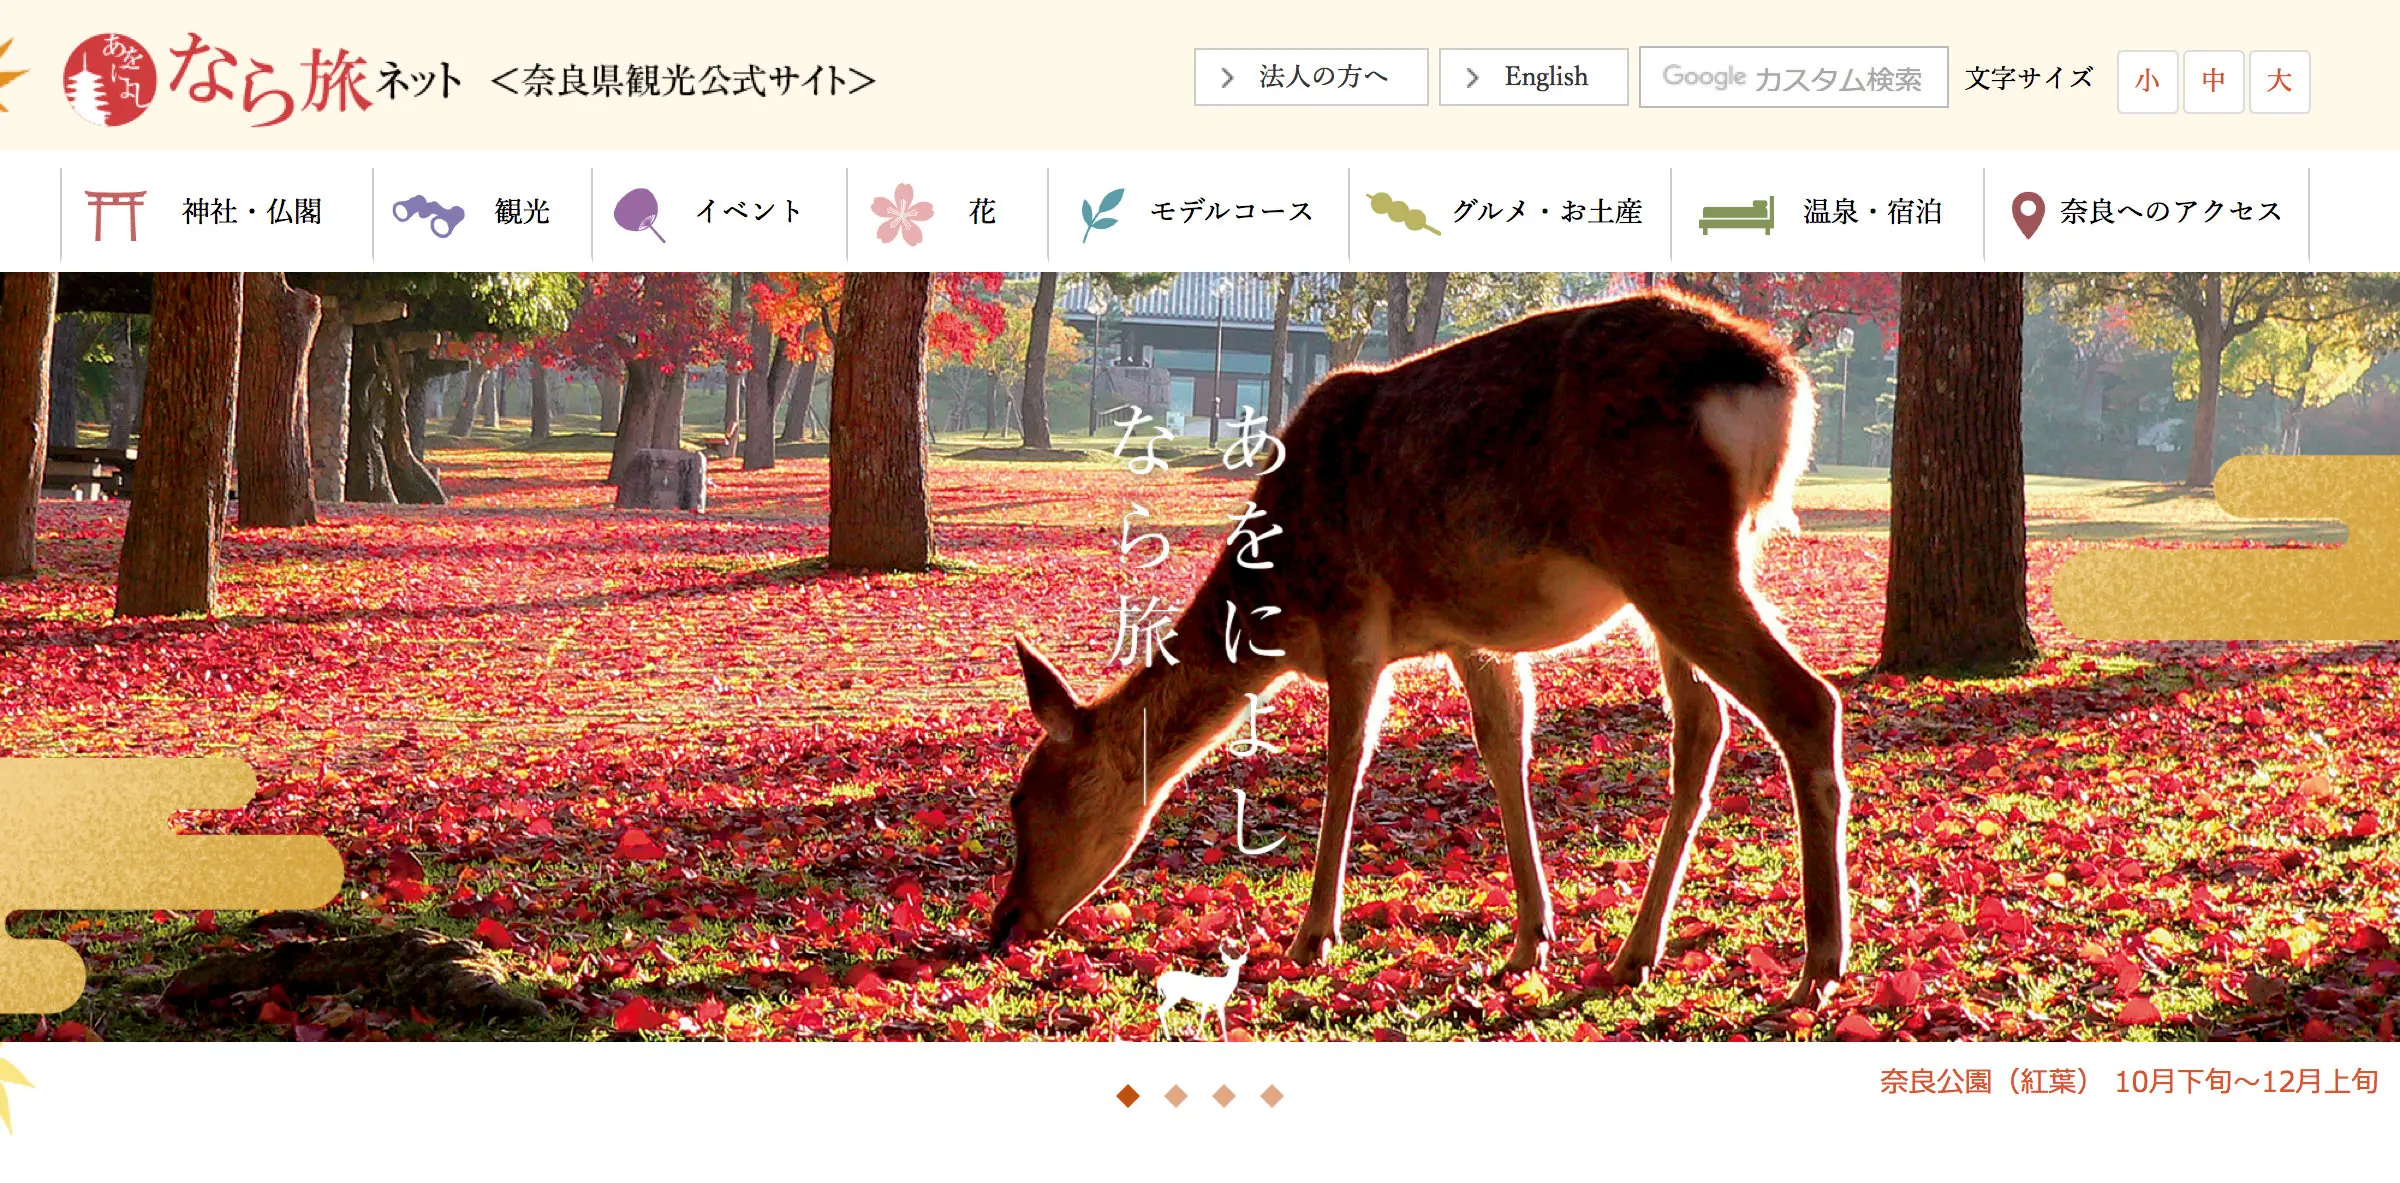  奈良県観光公式サイト　「あをによしなら旅ネット」